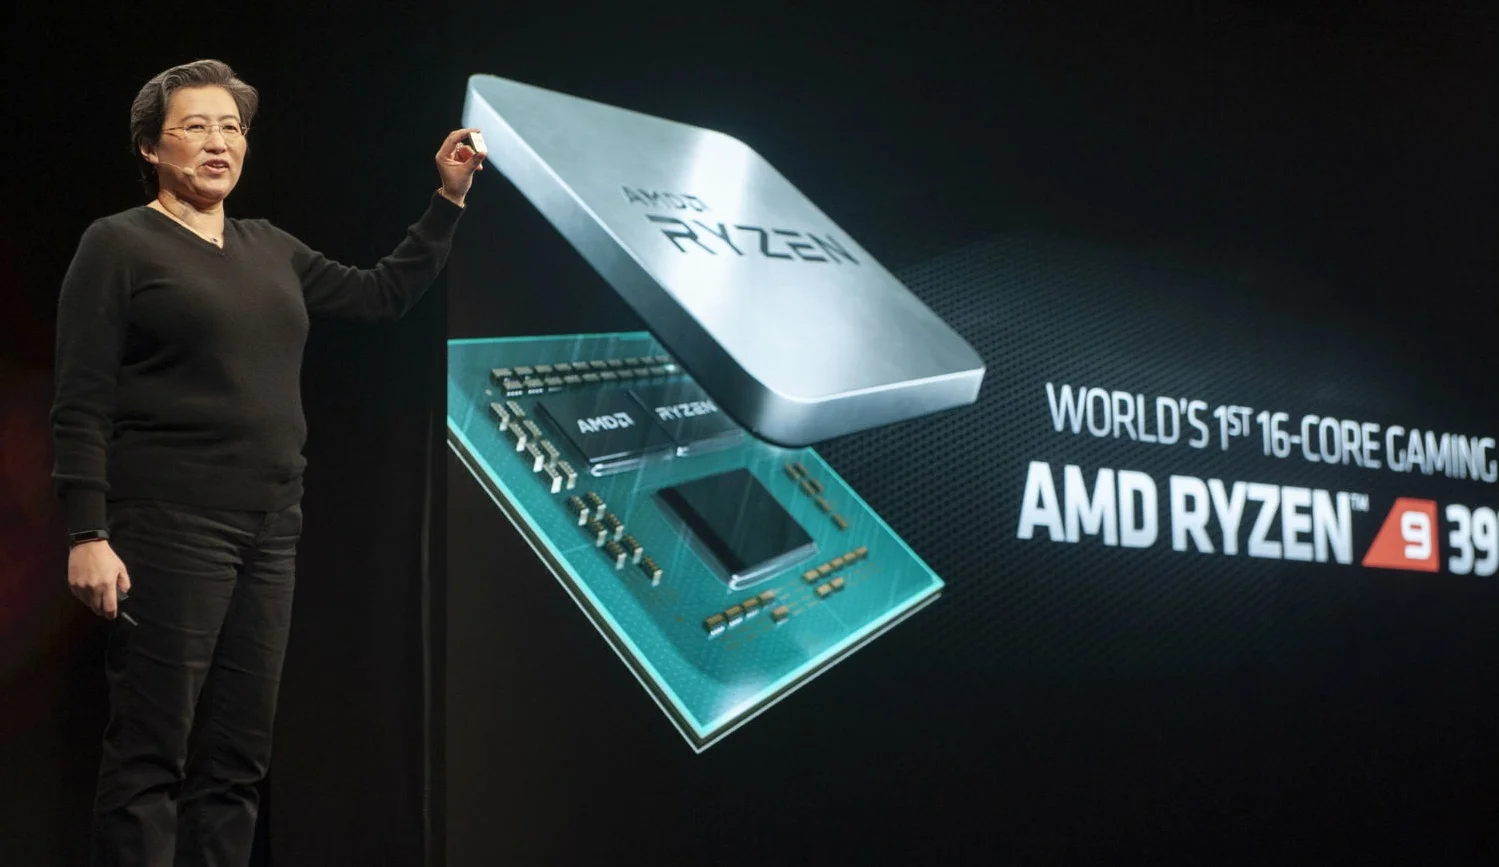 Анонс AMD Ryzen 9 3950X: 16-ядерный процессор для топовых игровых сборок - фото 1